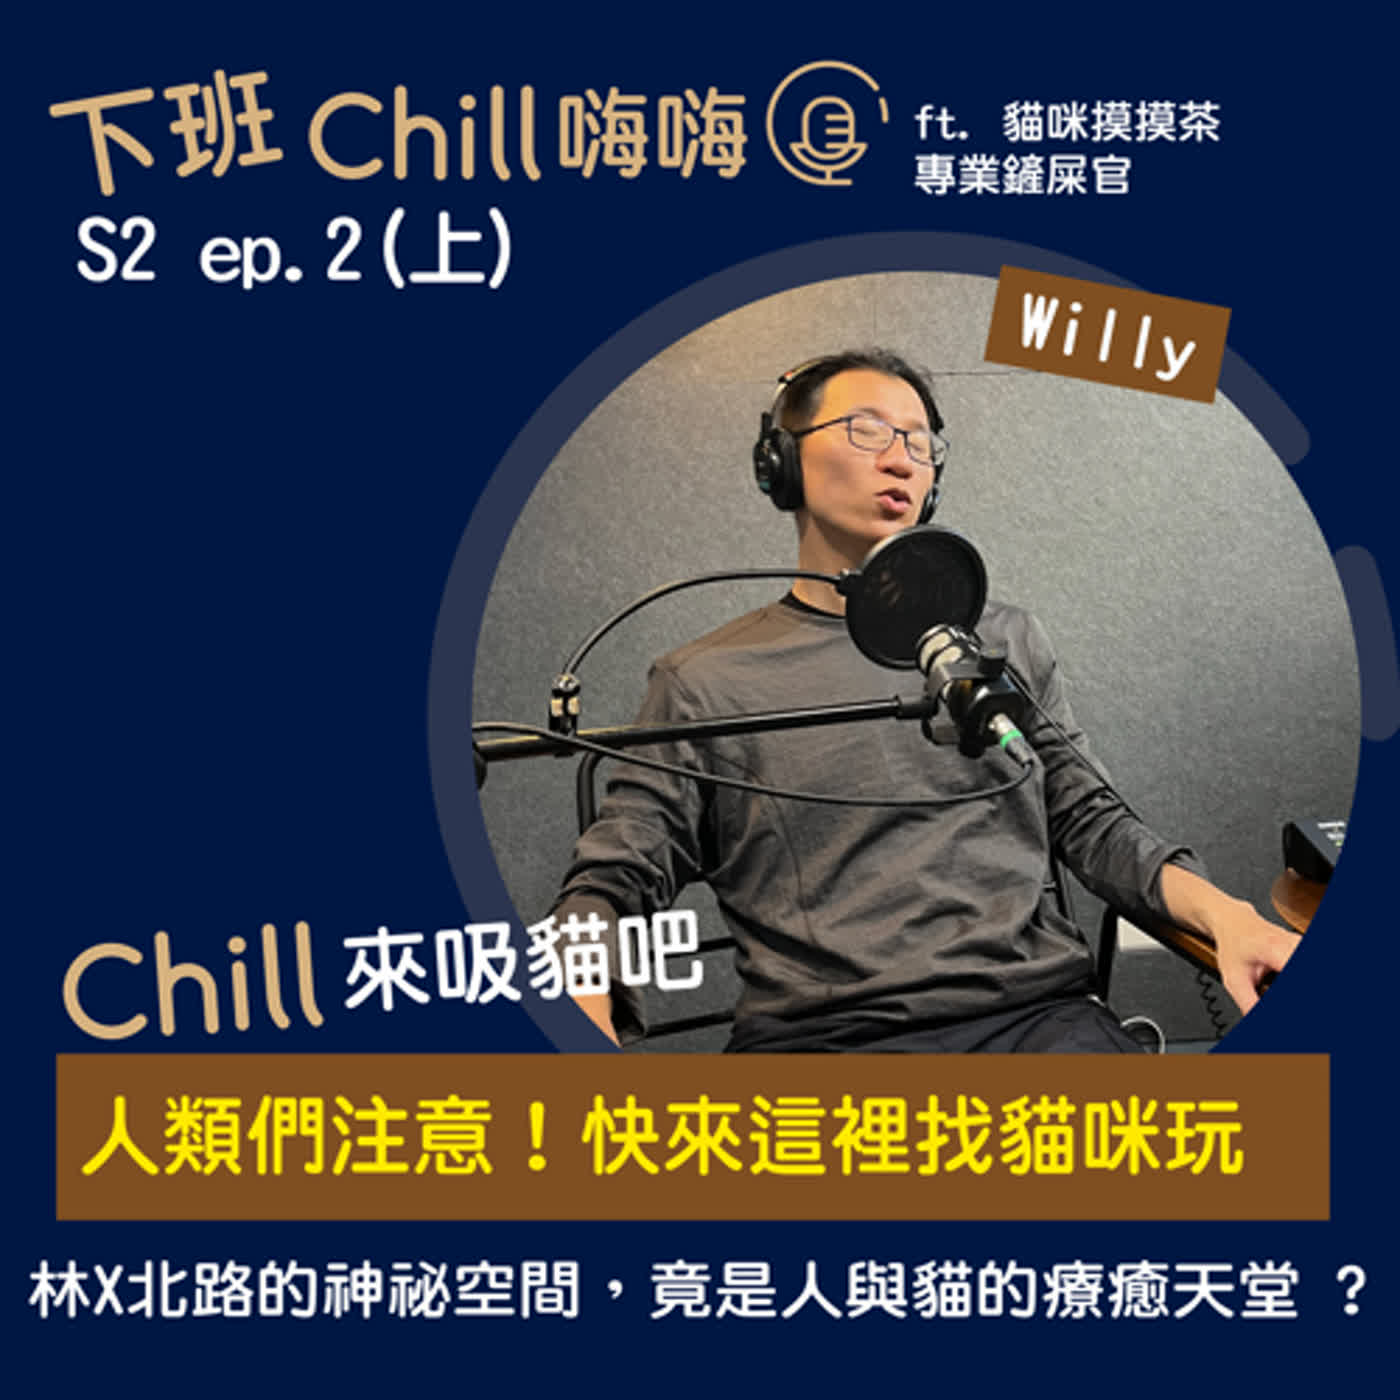 下班Chill 嗨嗨 S2 ep.2(上) | Chill來【貓咪摸摸茶】吸貓吧~ ft. Willy